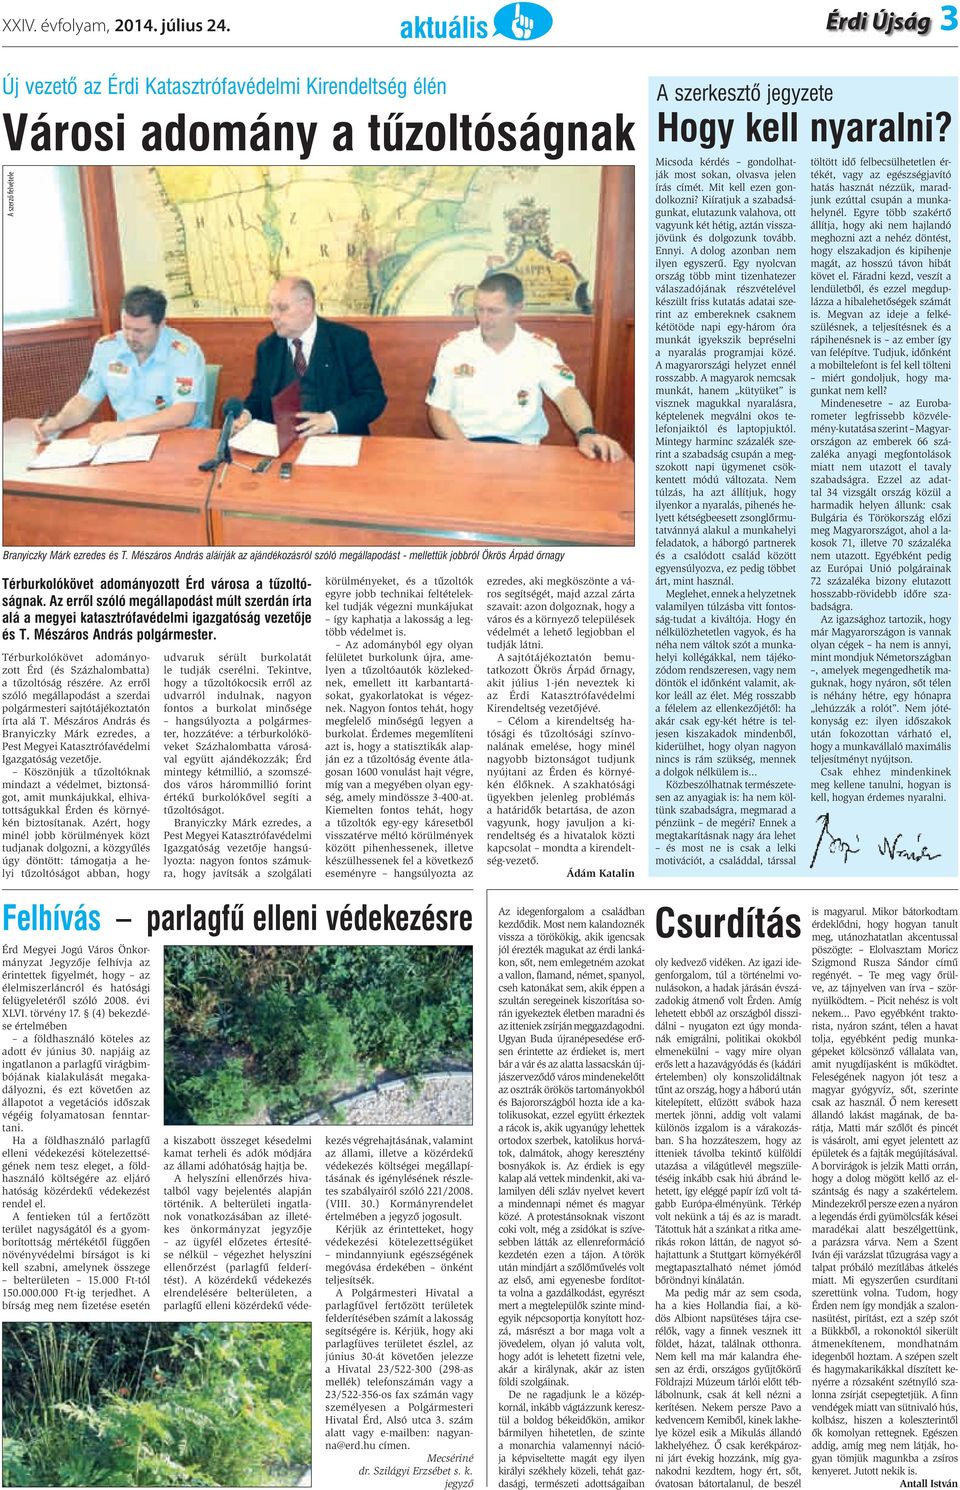 Az errõl szóló megállapodást múlt szerdán írta alá a megyei katasztrófavédelmi igazgatóság vezetõje és T. Mészáros András polgármester.